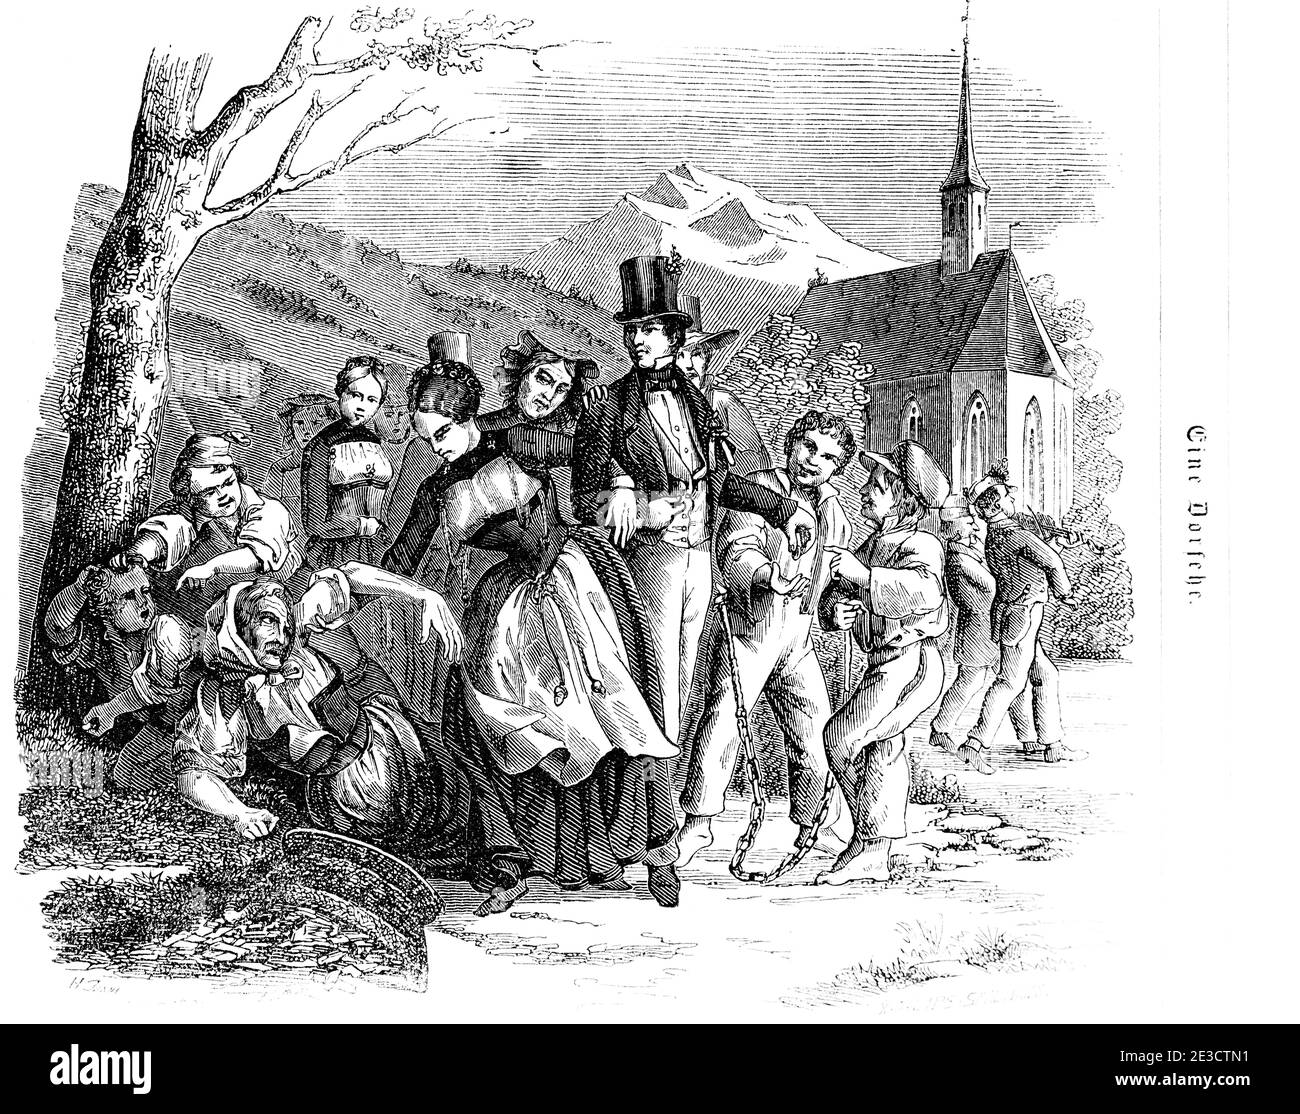 Mariée et marié marchant dans le village, calendrier suisse avec une histoire sur un mariage de campagne, Saint-Gall Suisse 1853 Banque D'Images